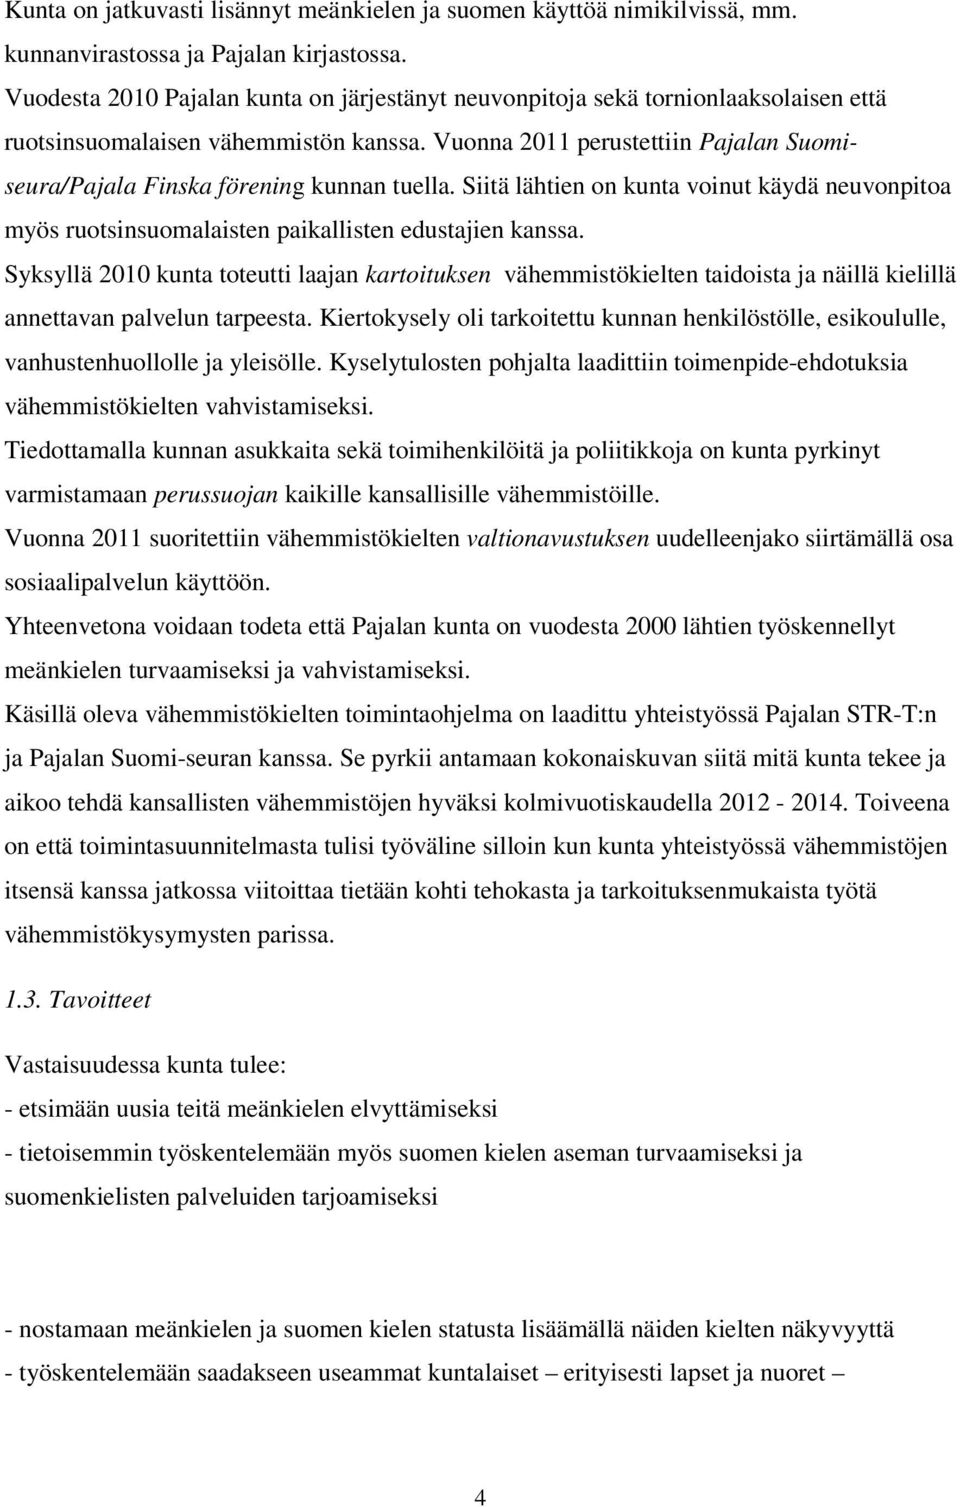 Vuonna 2011 perustettiin Pajalan Suomiseura/Pajala Finska förening kunnan tuella. Siitä lähtien on kunta voinut käydä neuvonpitoa myös ruotsinsuomalaisten paikallisten edustajien kanssa.